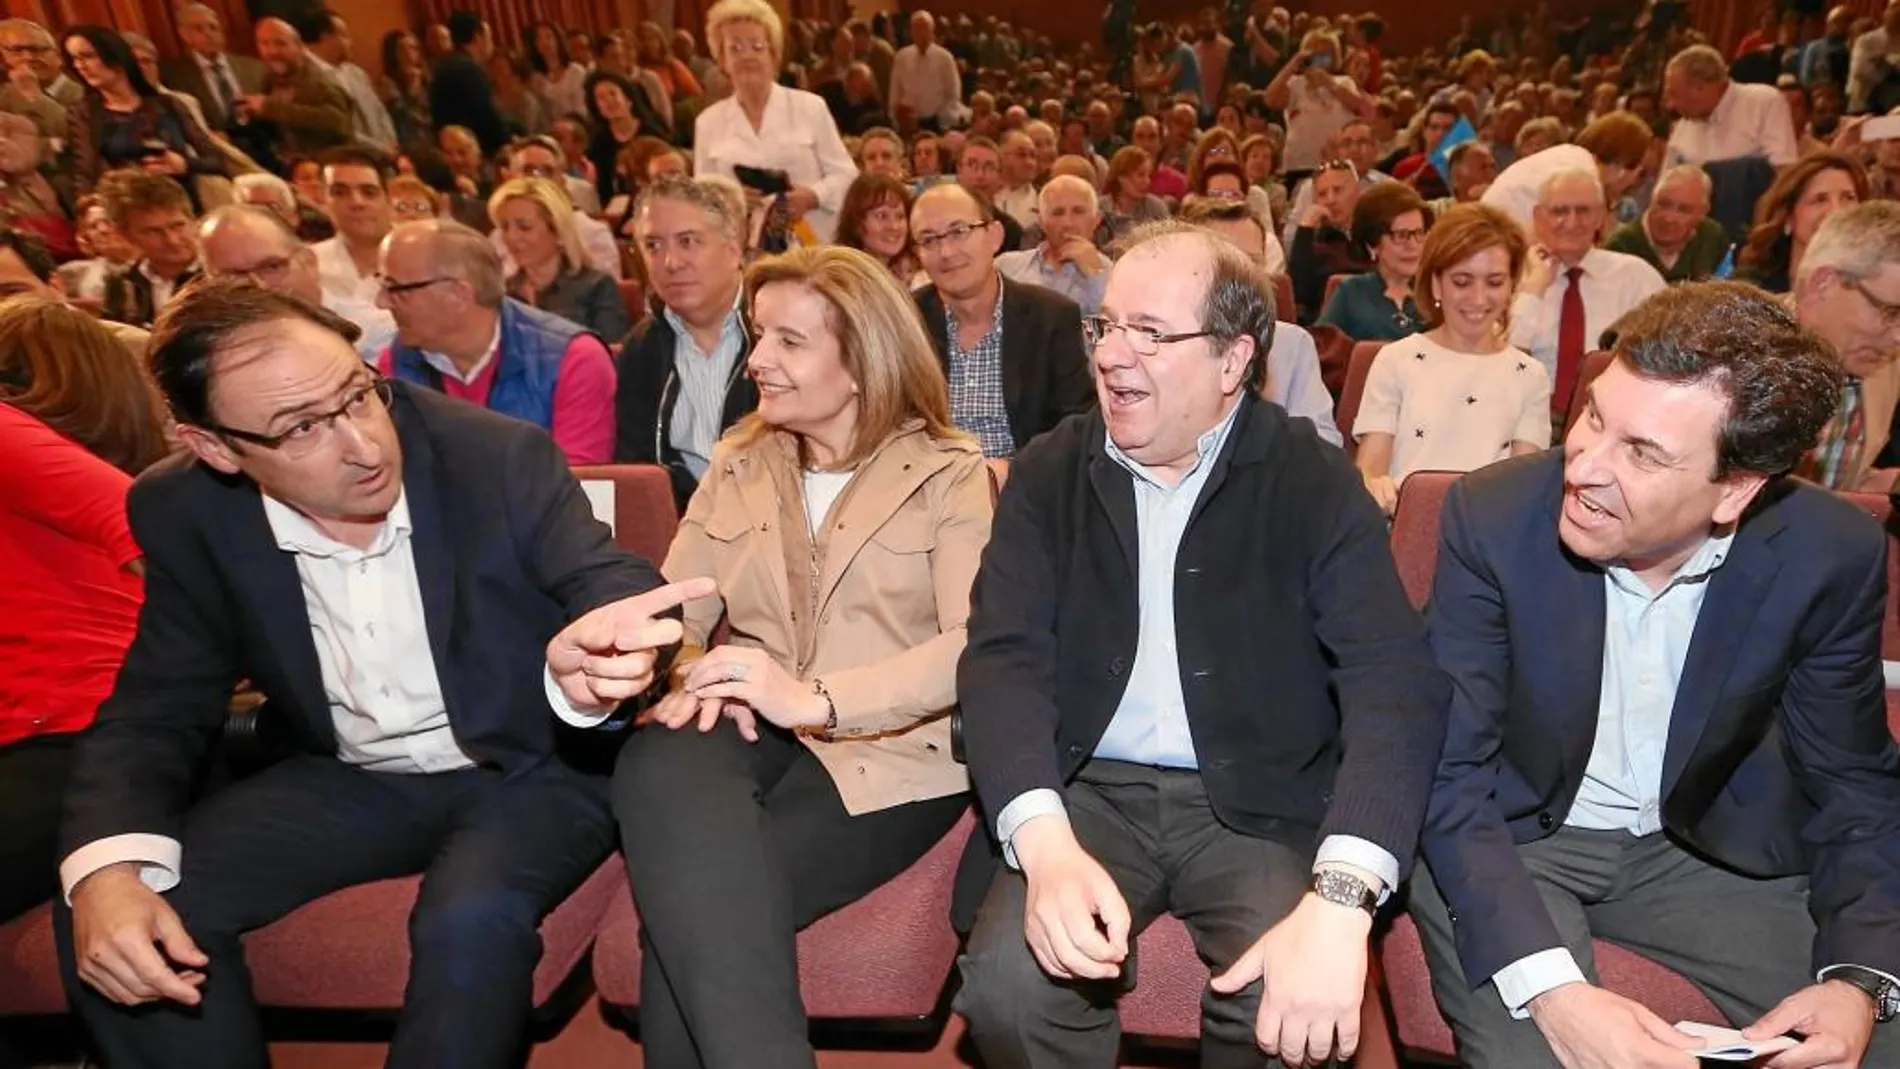 El candidato del Partido Popular, Juan Vicente Herrera, inició la campaña en Palencia, junto a la ministra Fátima Báñez, Alfonso Polanco y Carlos Fernández Carriedo